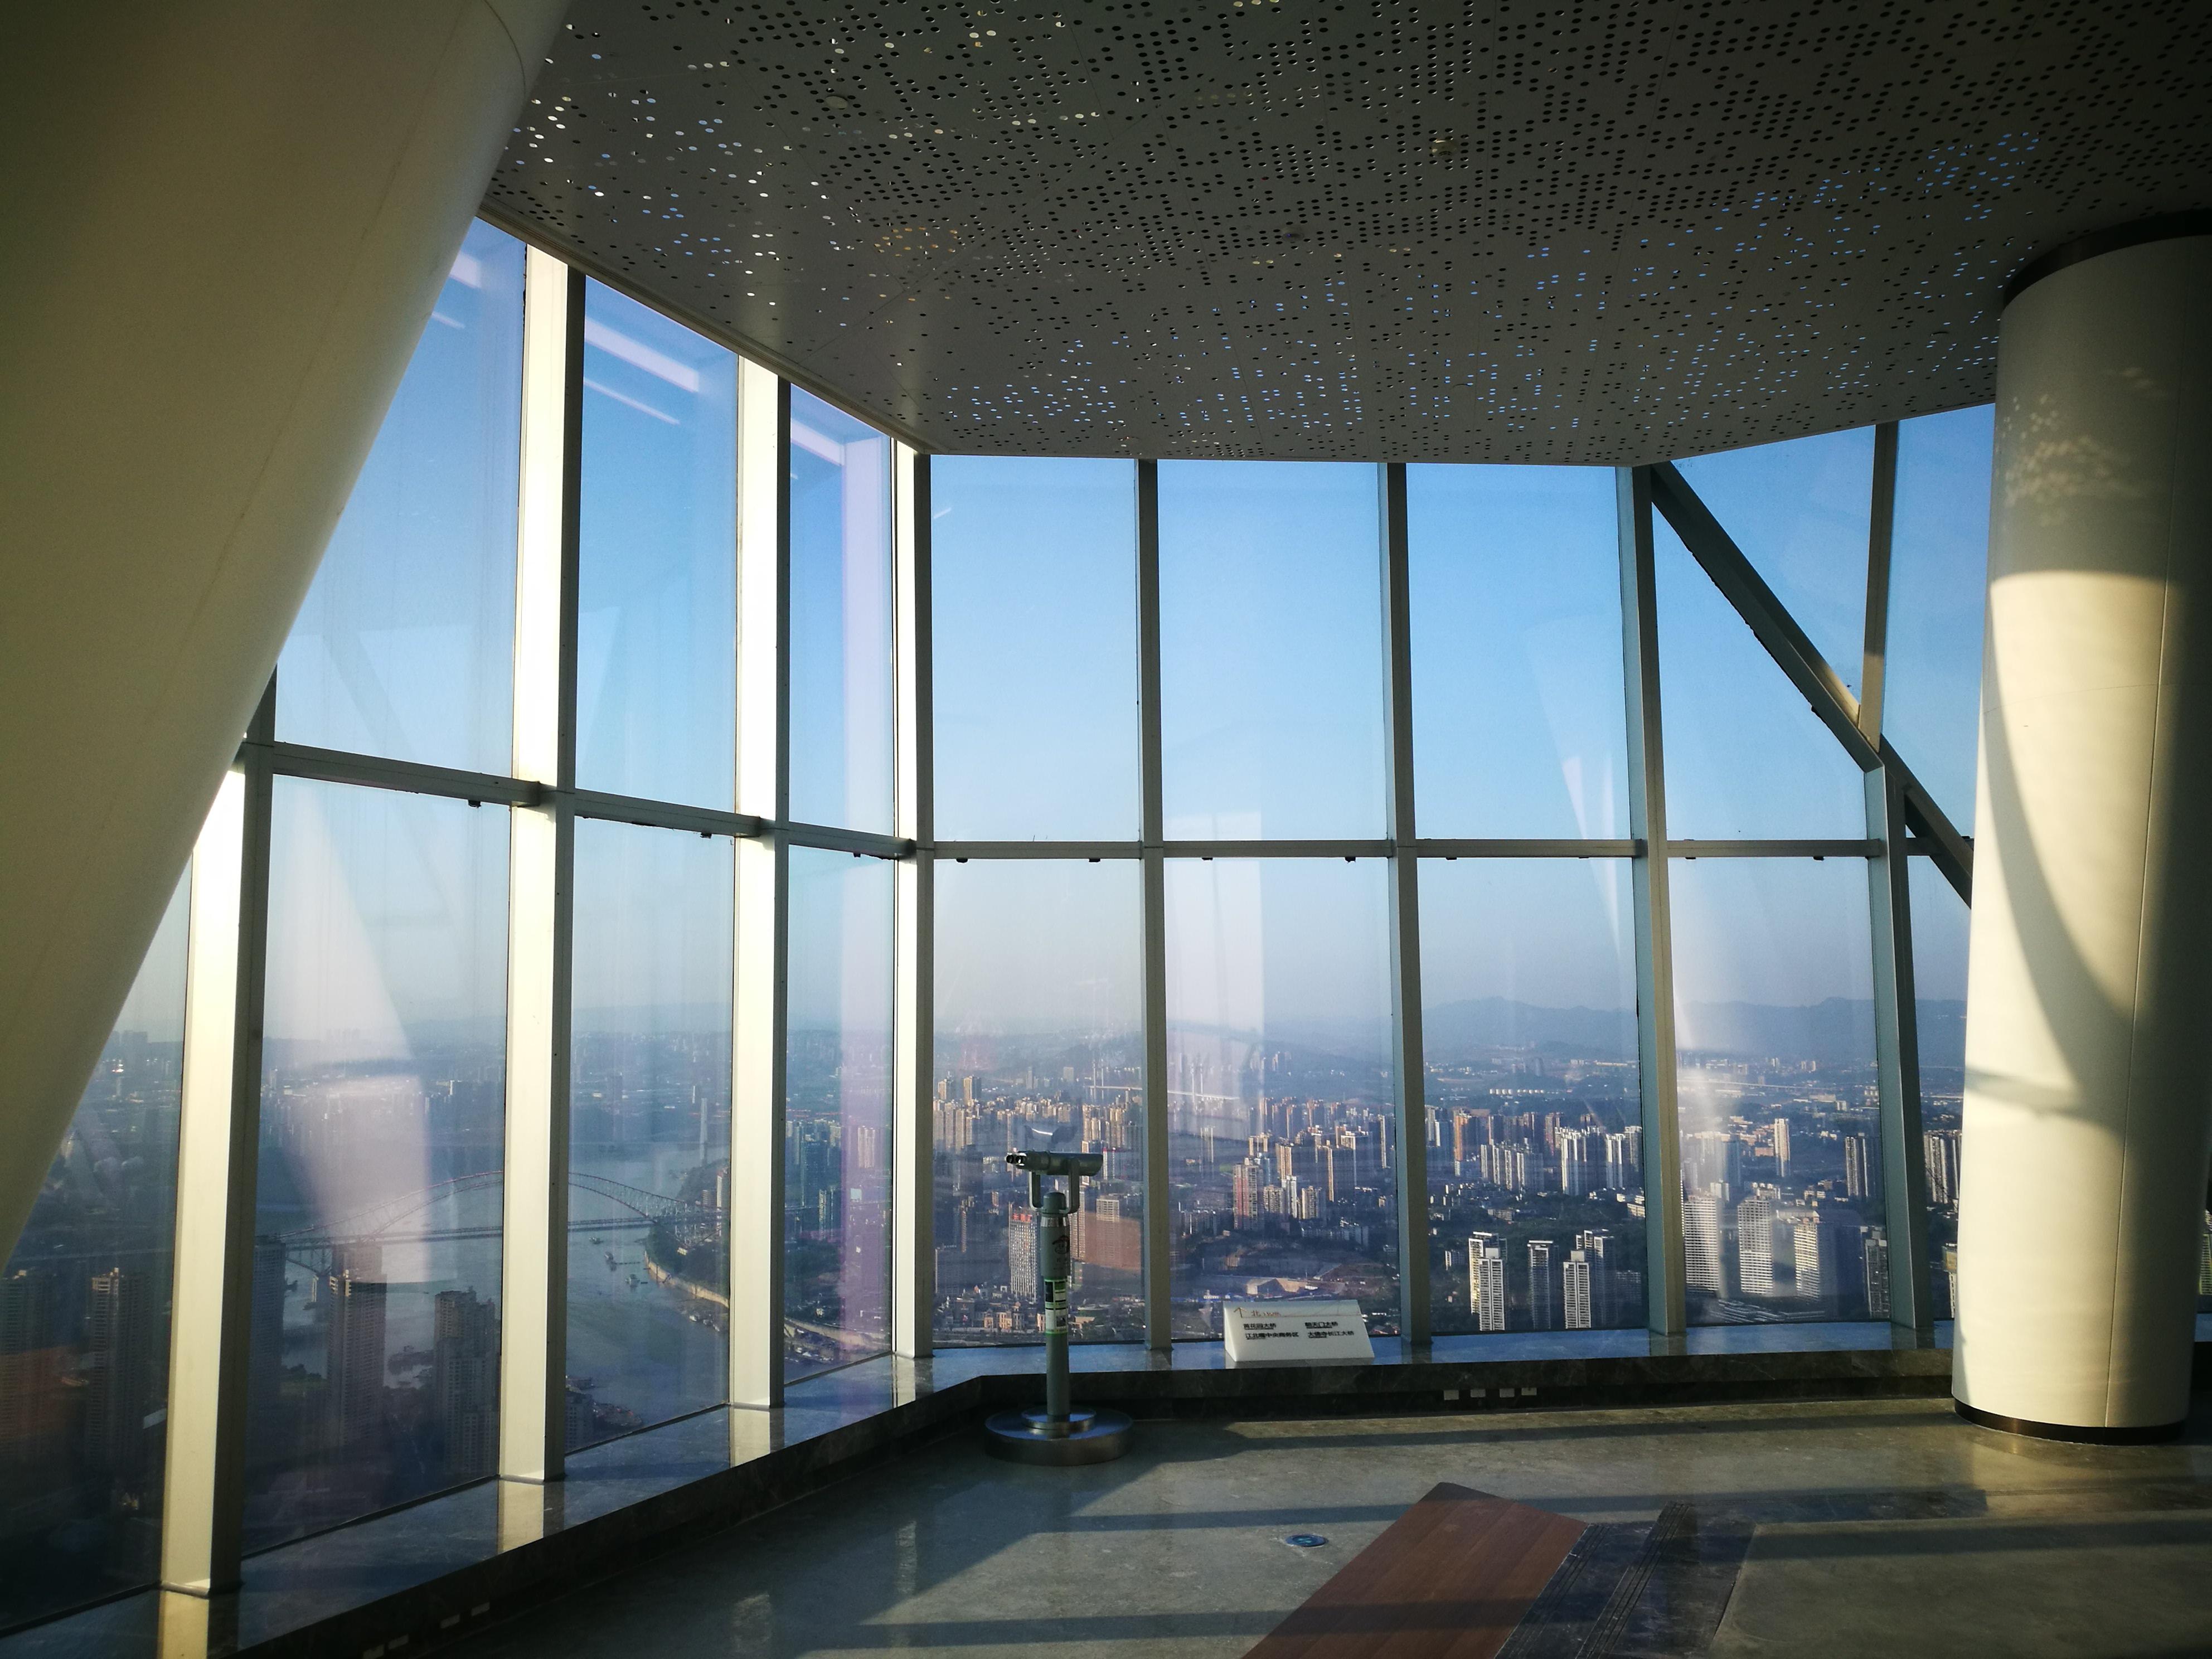 2022488米观景平台玩乐攻略,广州塔上的488米观景平台是最...【去哪儿攻略】